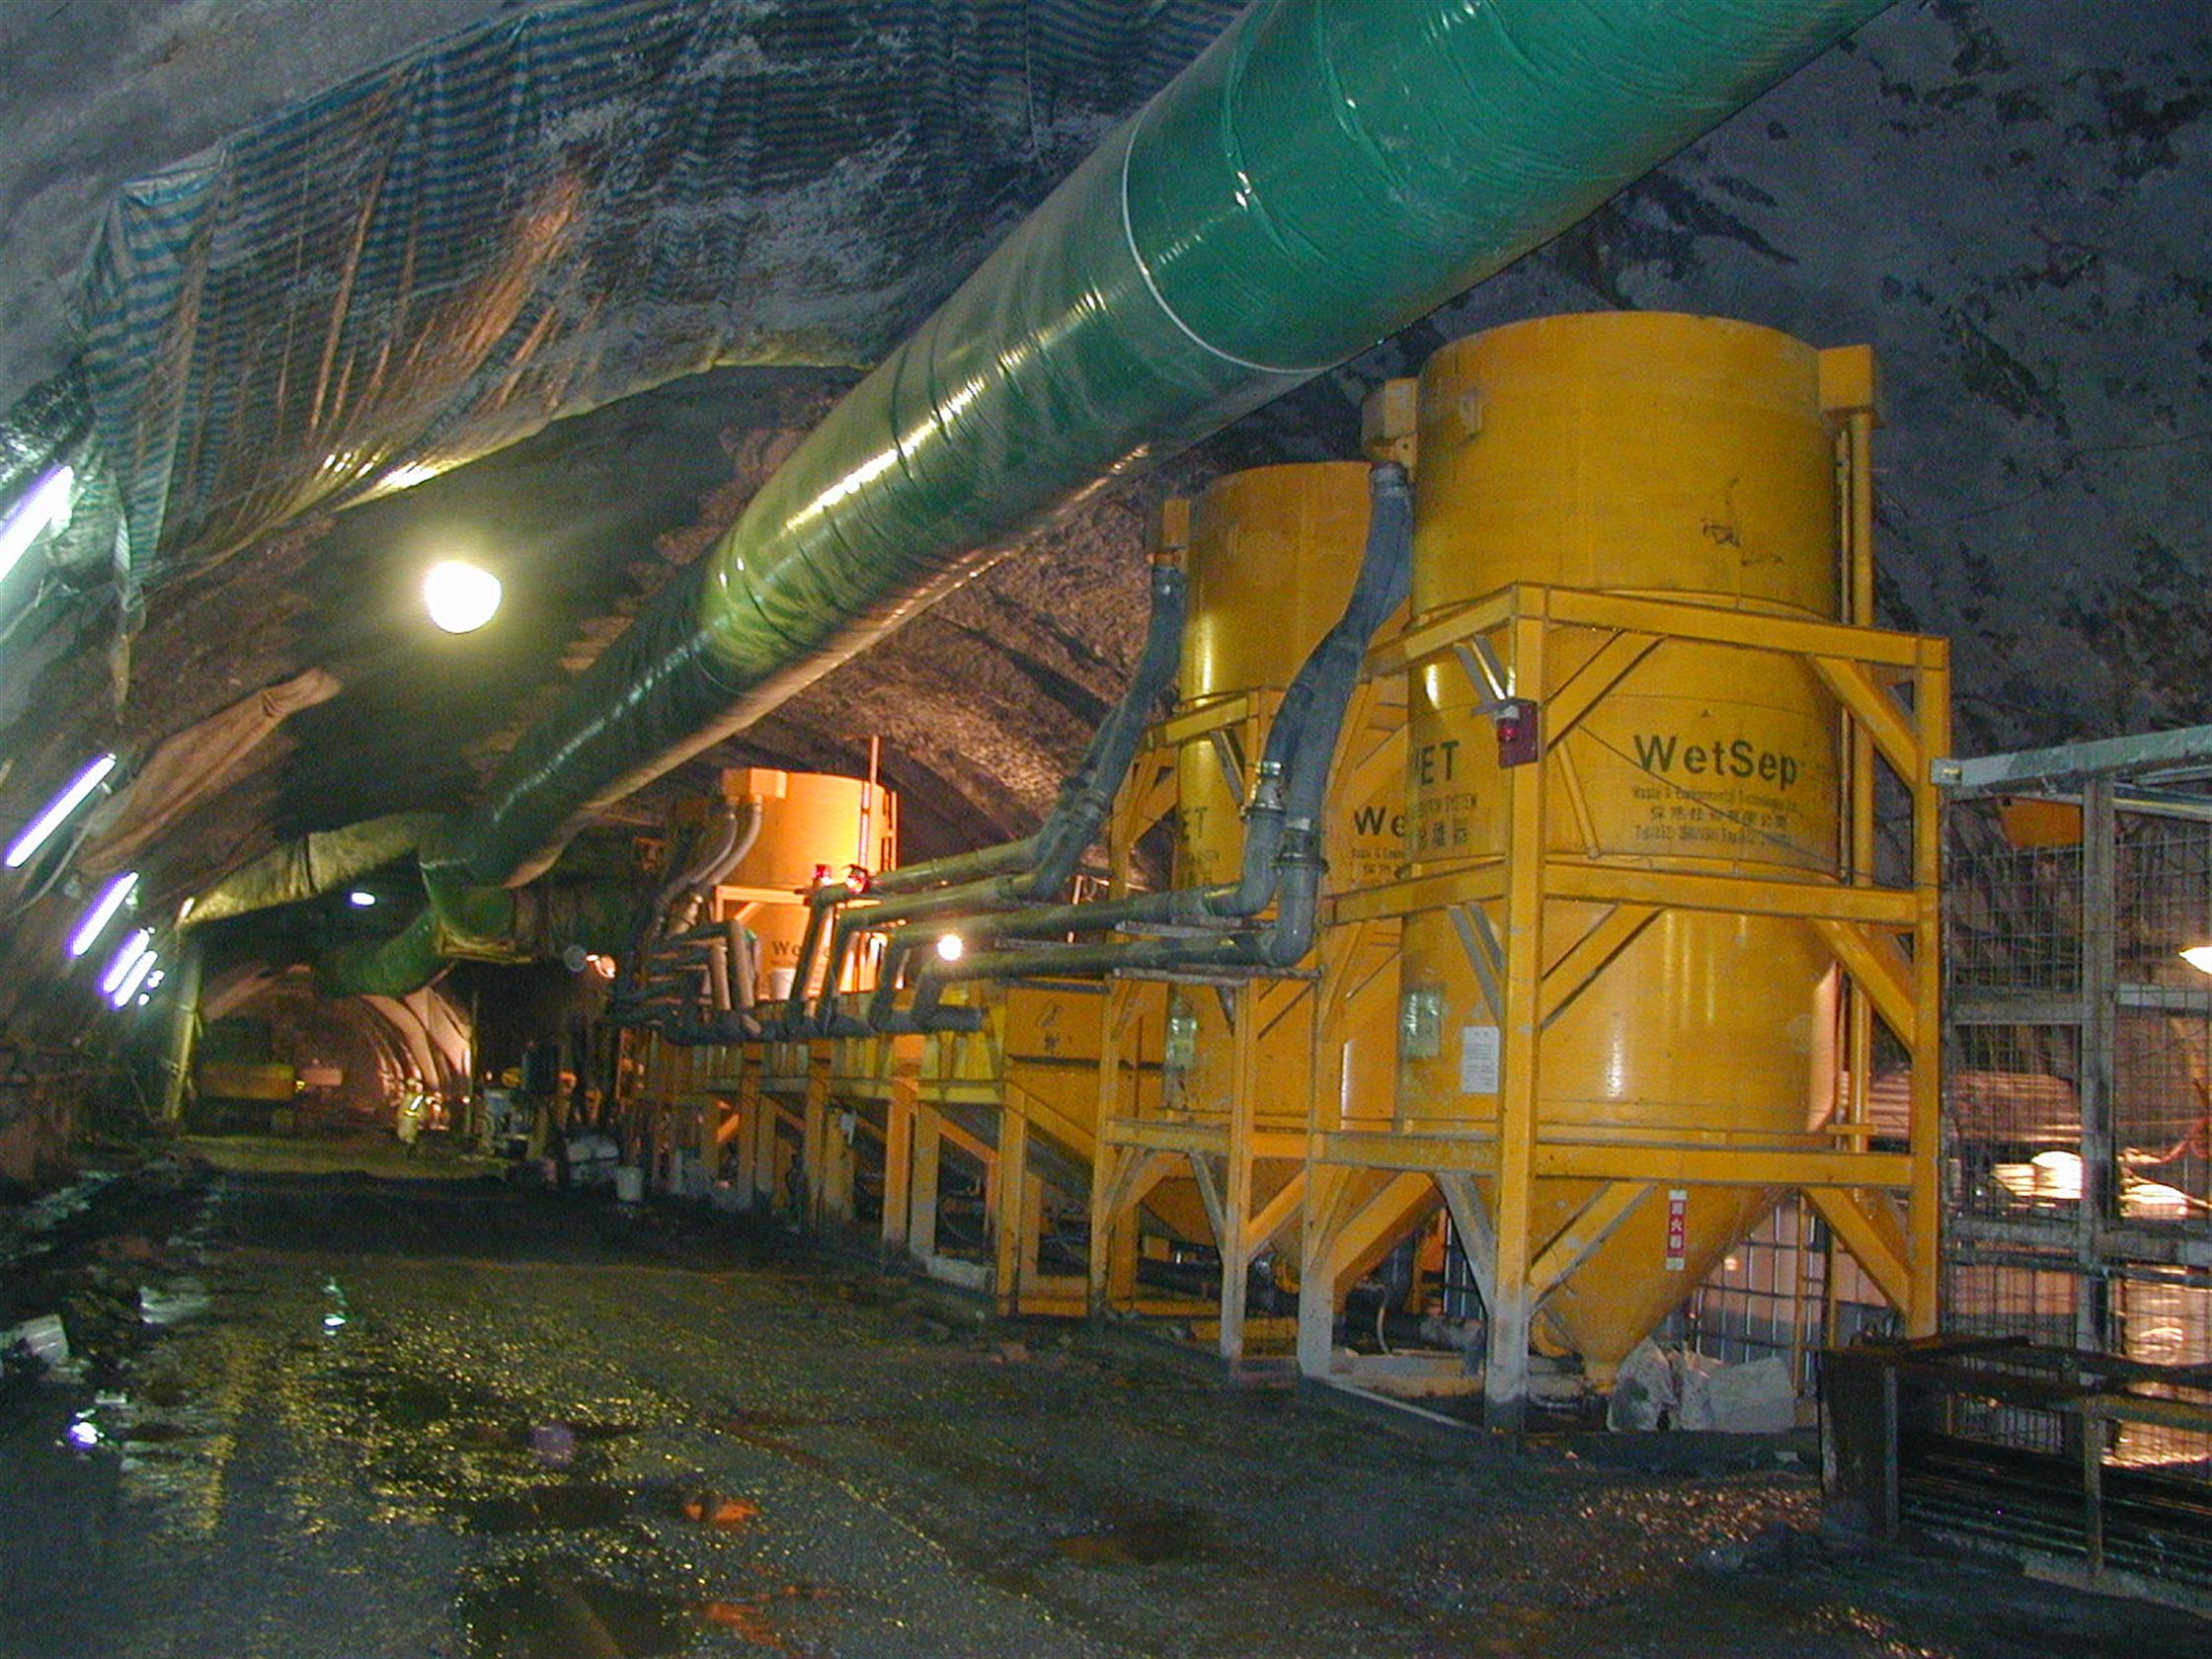 雪山隧道-二號豎井井底水處理設備